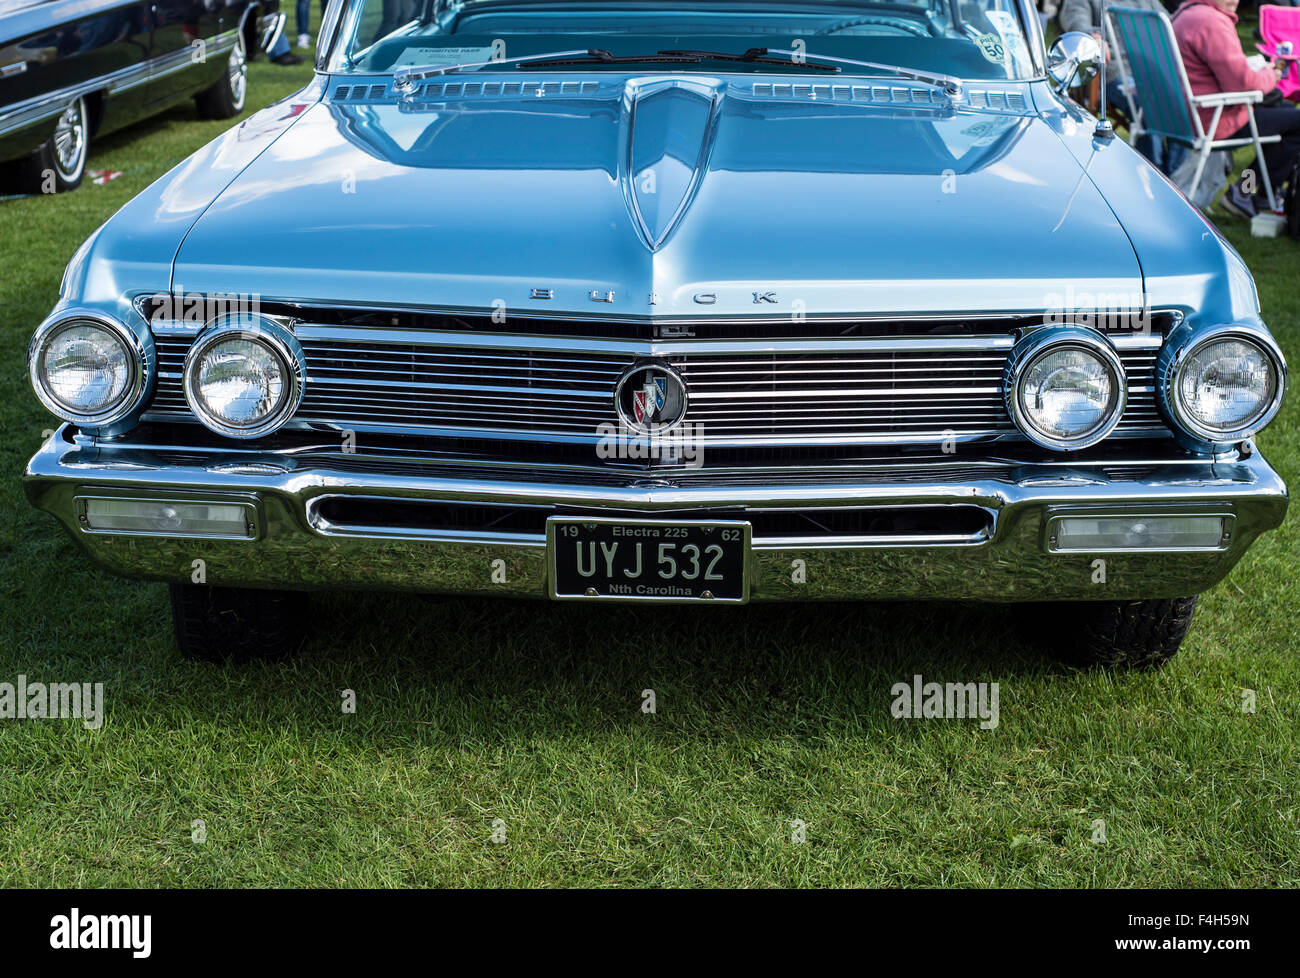 Buick, blu, twin proiettori, parabrezza, tergicristalli, calandra, Foto Stock